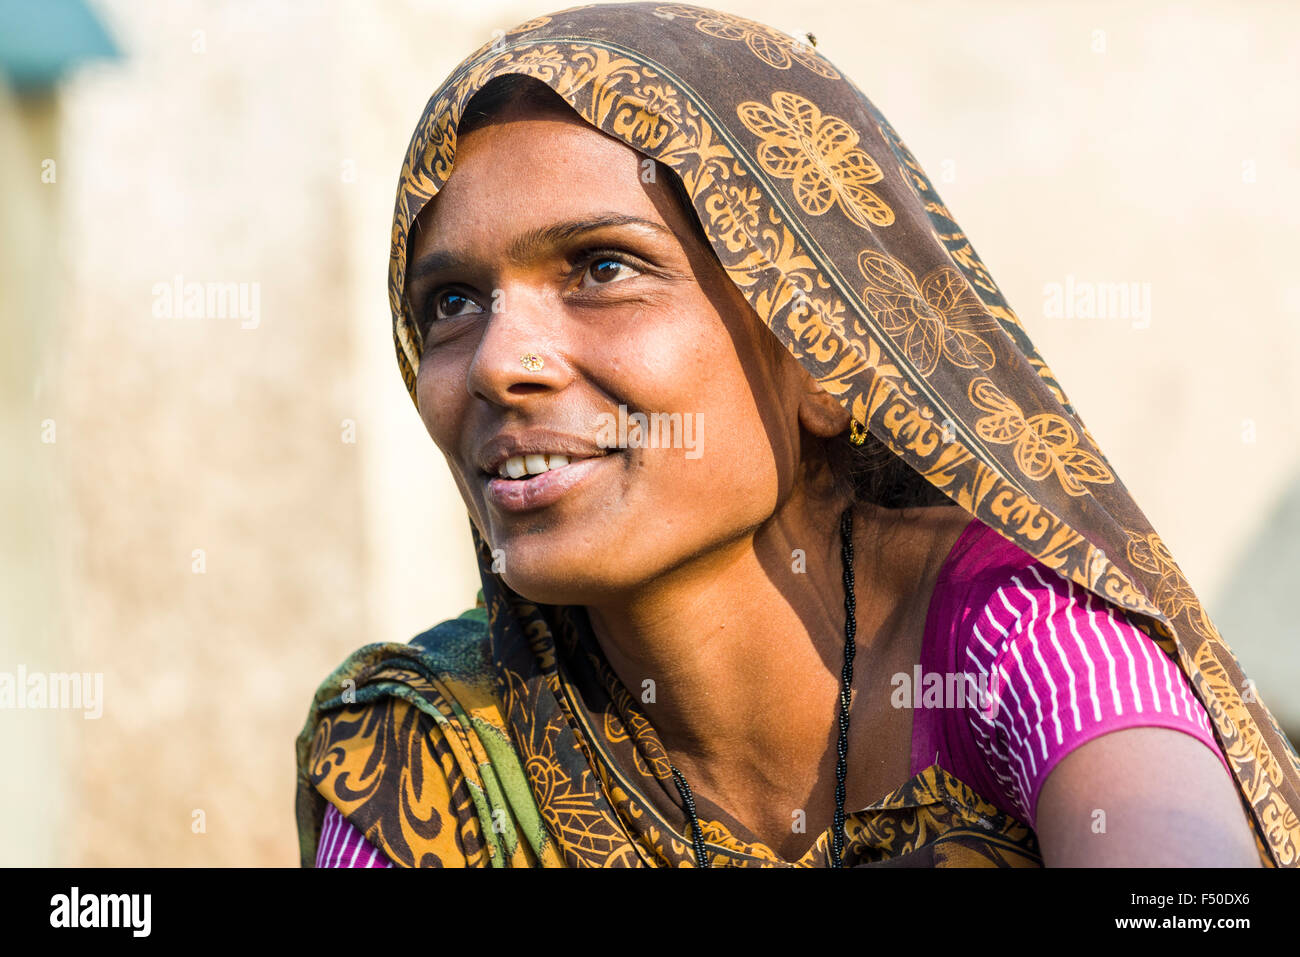 Le portrait d'une femme portant un sari, travaillant sur un marché aux légumes Banque D'Images